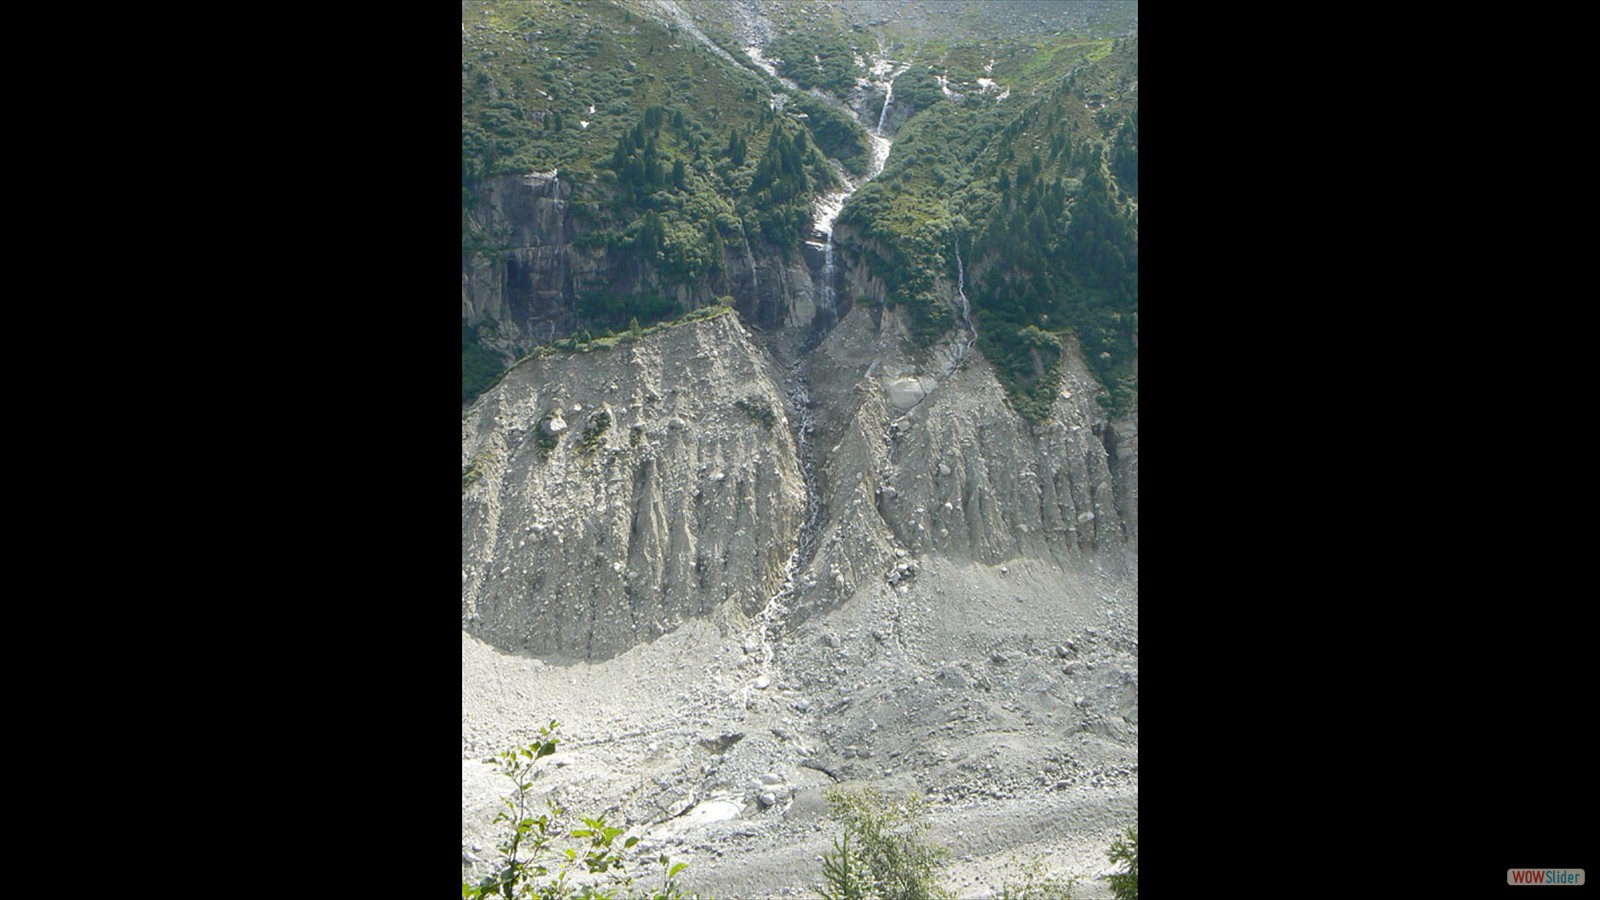 Op 'n oud schilderij was dit gletsjerdal compleet gevuld!